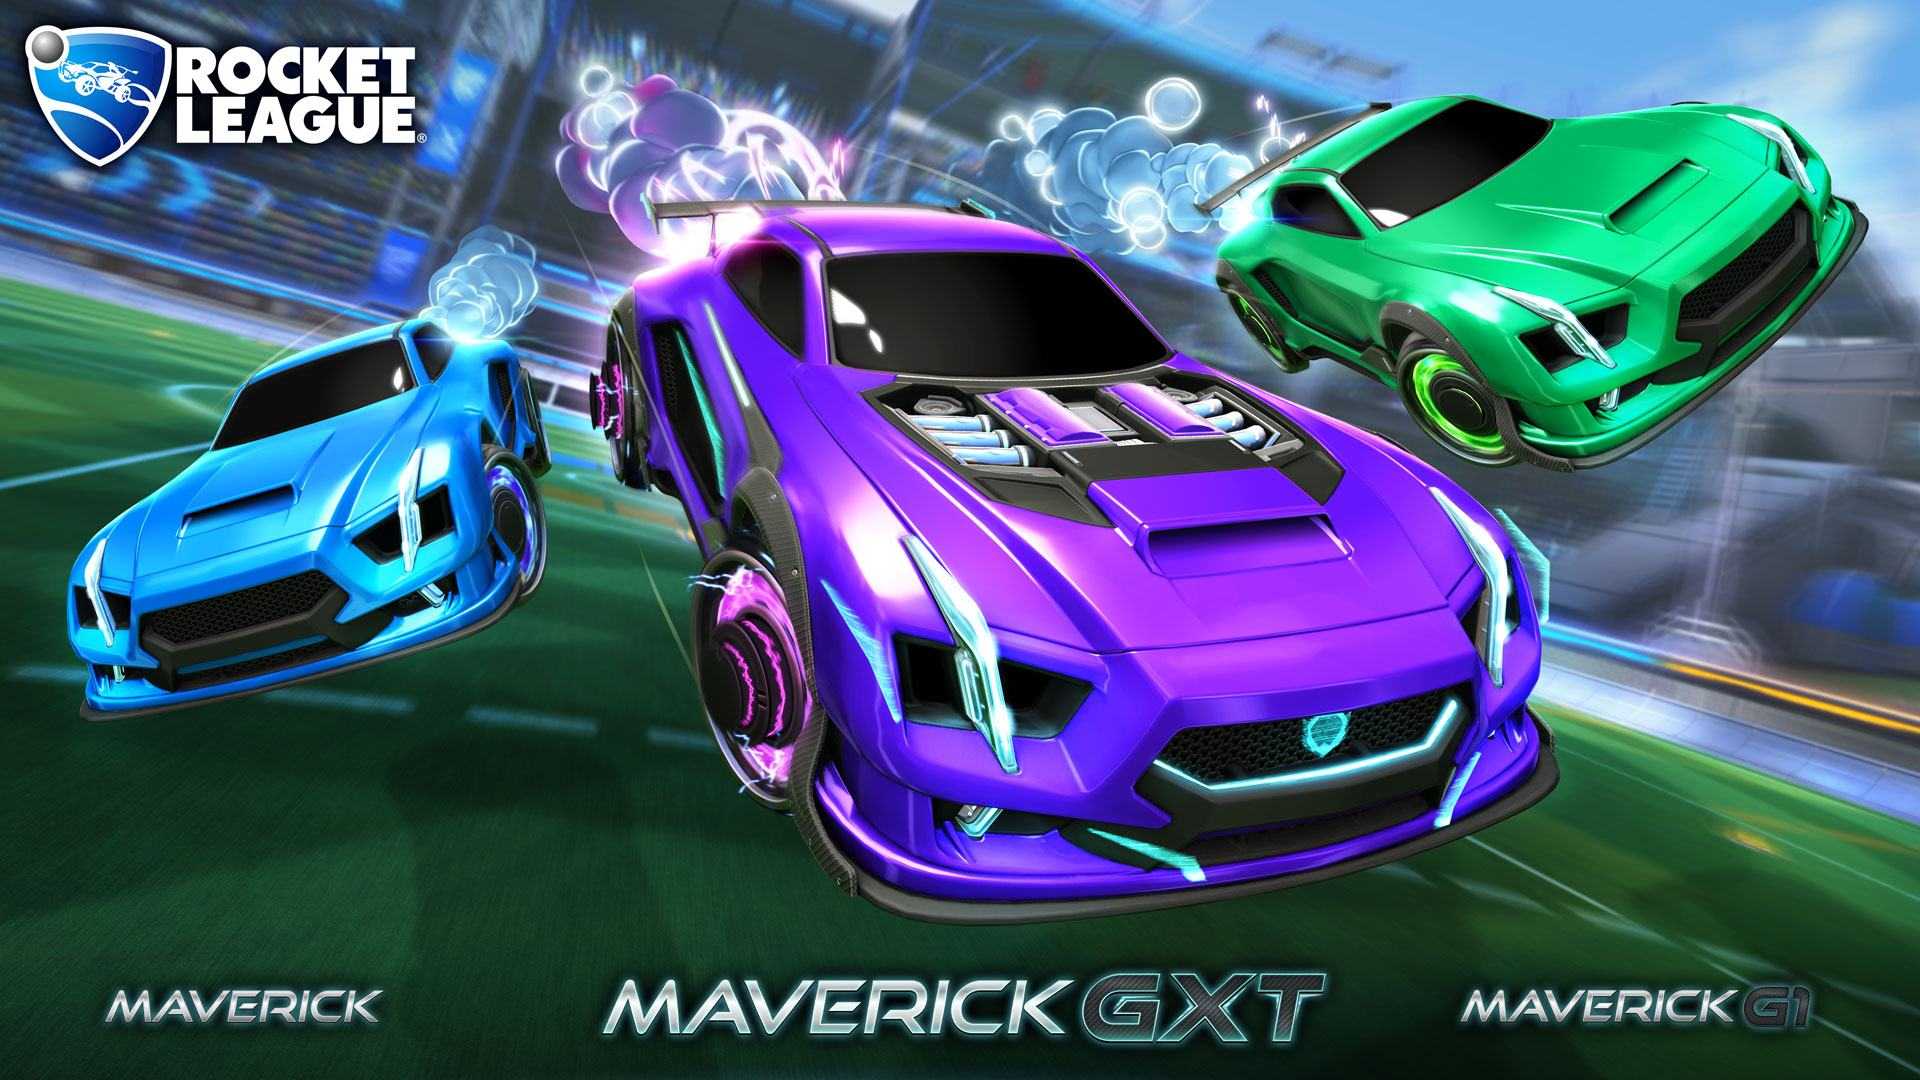 Nuevo vehículo para Rocket League, Maverick, disponible en el Rocket Pass1